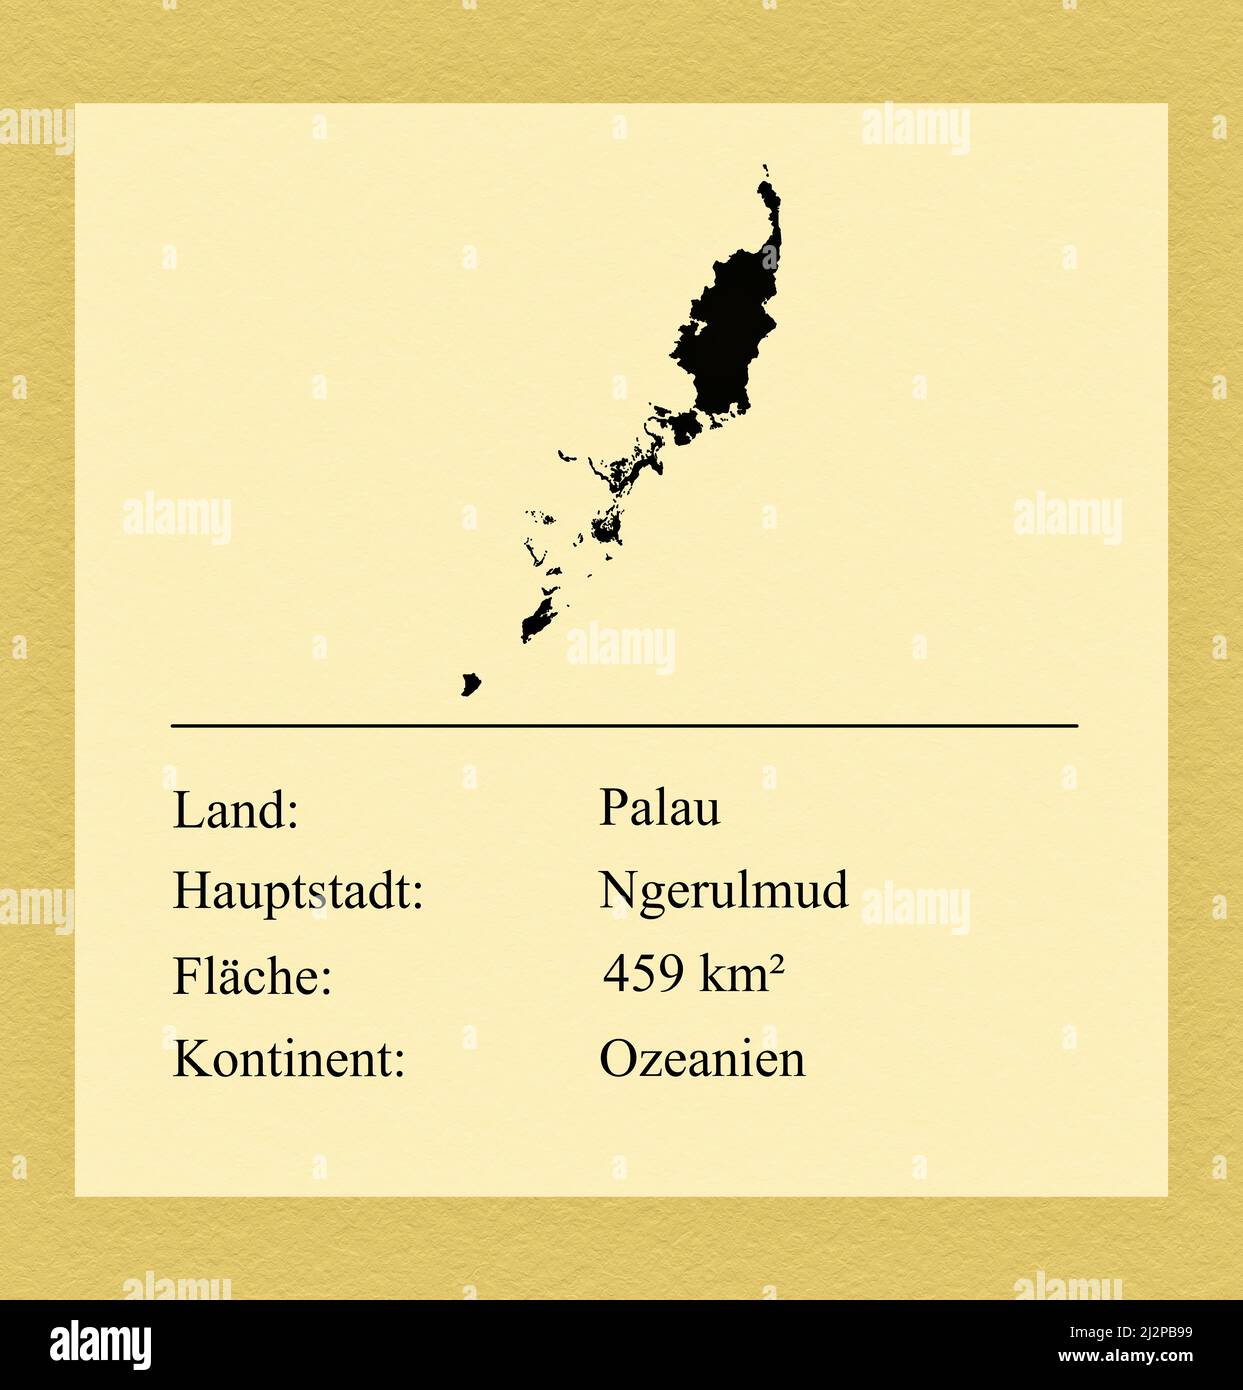 Umrisse des Landes Palau, darunter ein kleiner Steckbrief mit Ländernamen, Hauptstadt, Fläche und Kontinent Stock Photo